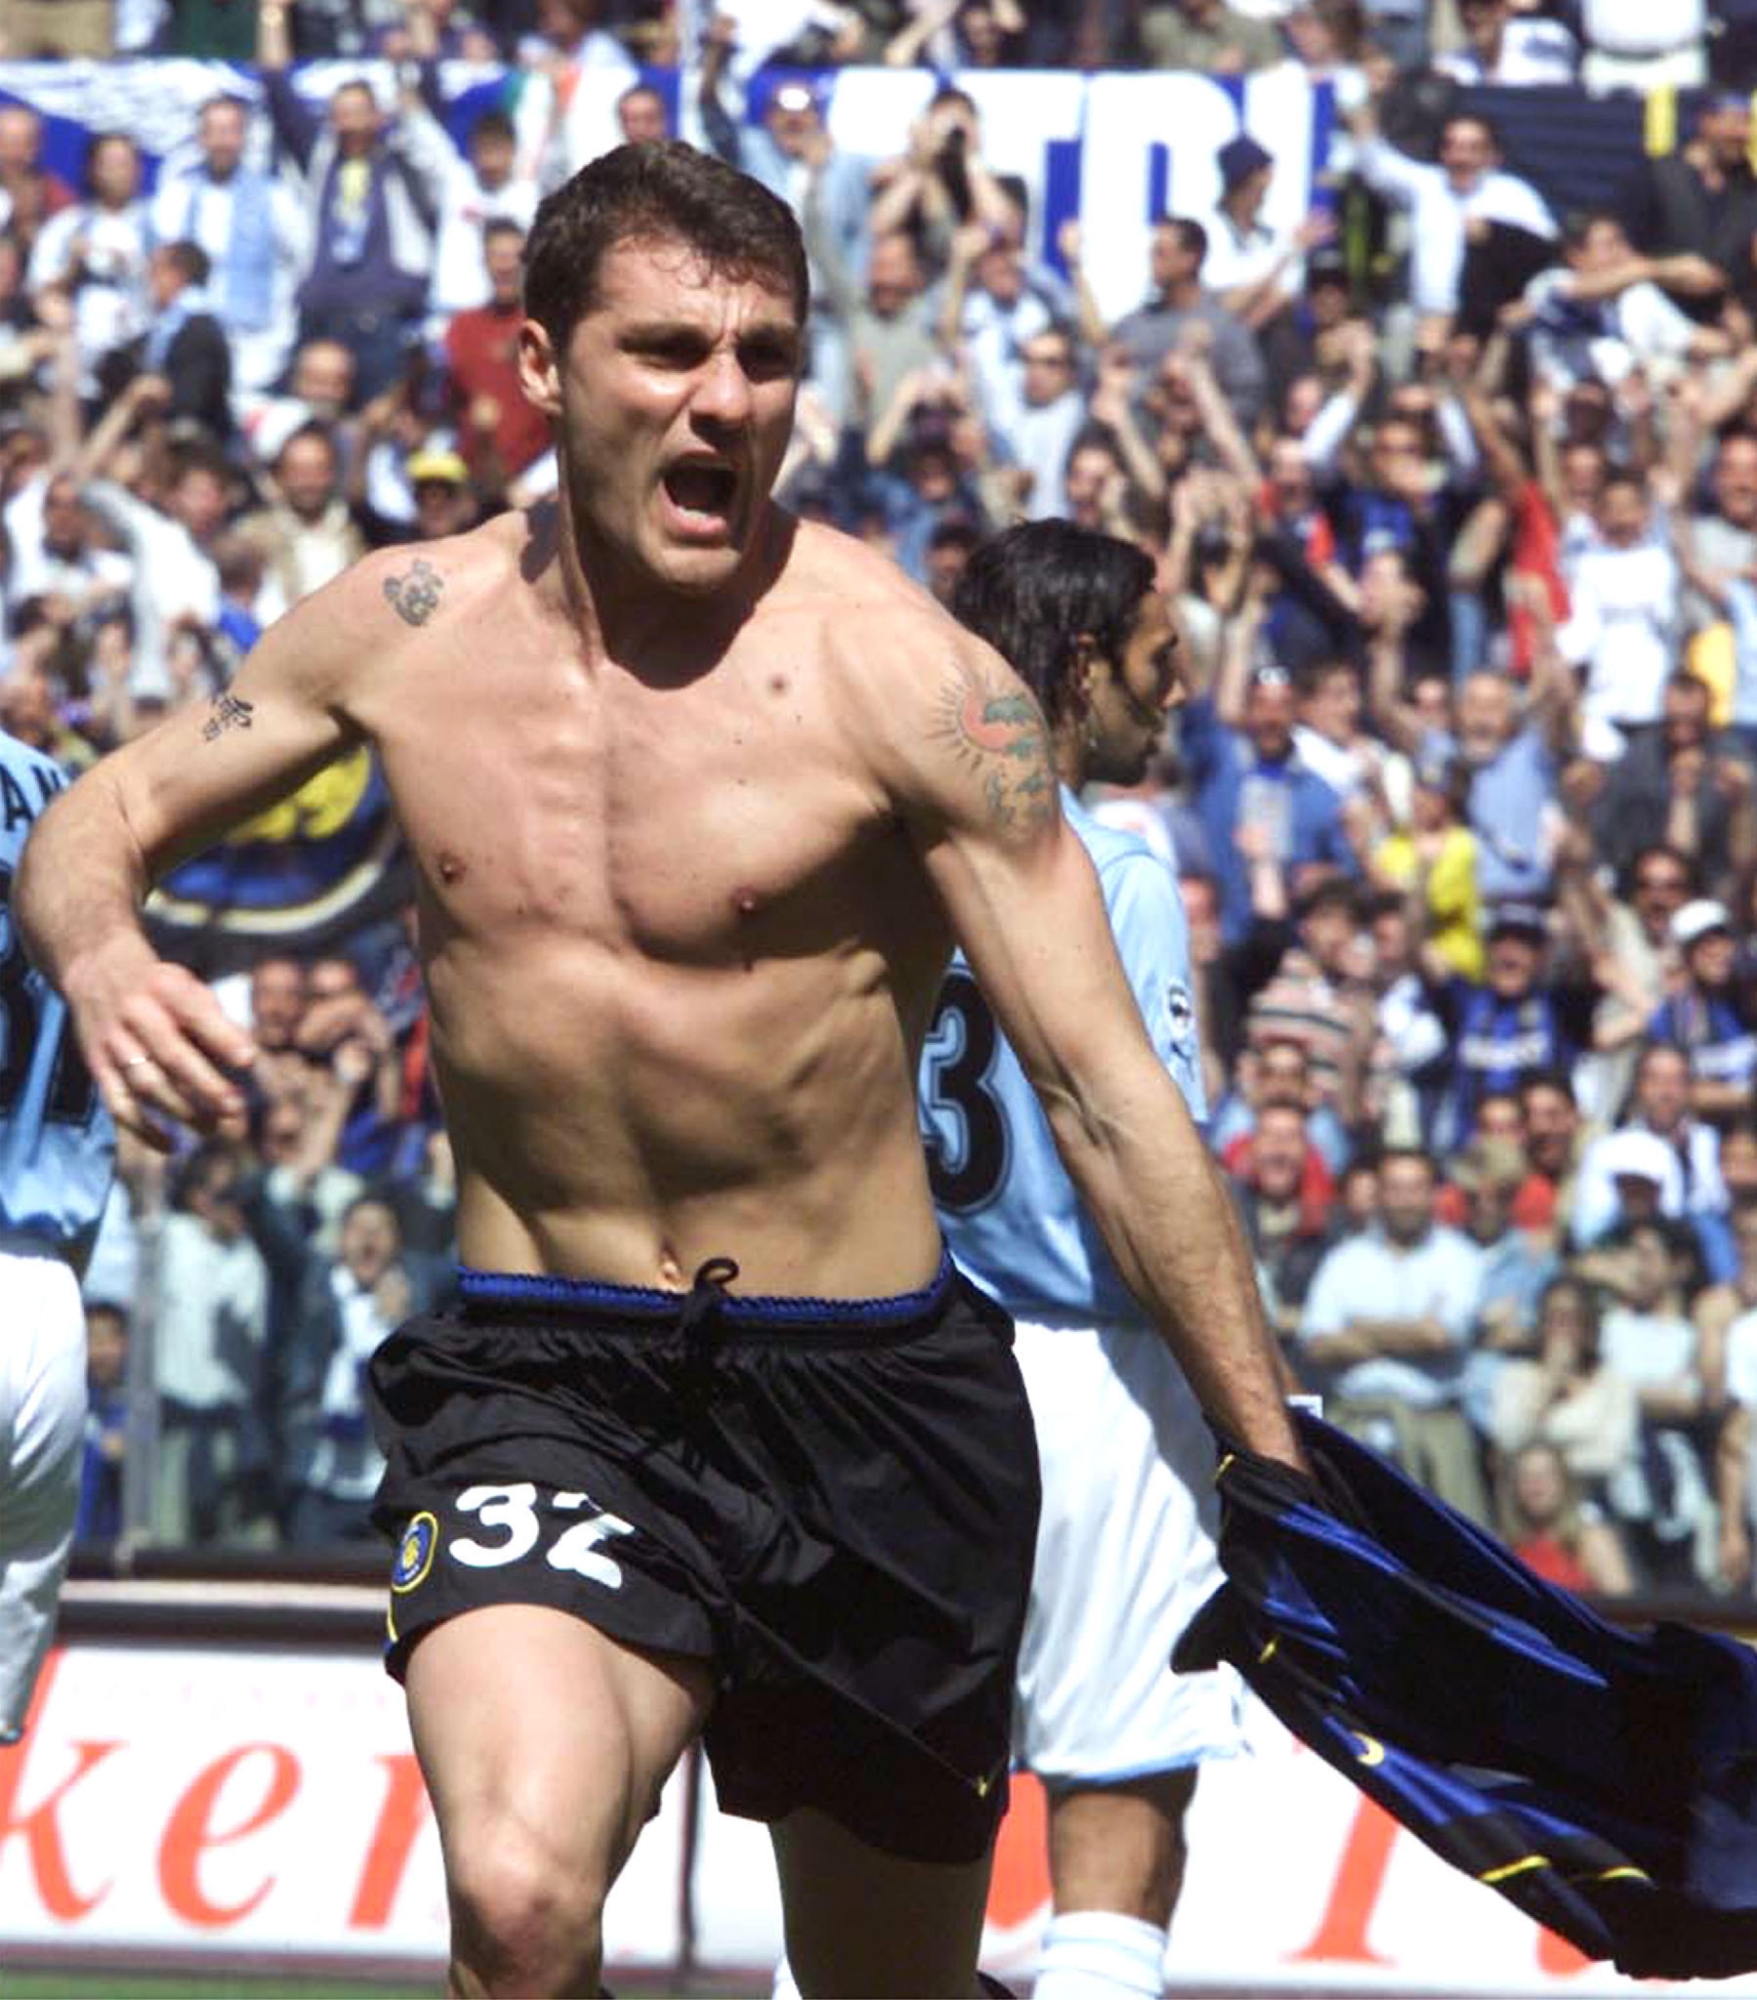 L'attaccante dell'Inter, Christian Vieri, esulta dopo un gol realizzato contro la Lazio allo stadio Olimpico di Roma, 5 maggio 2002. ANSA/BRAMBATTI